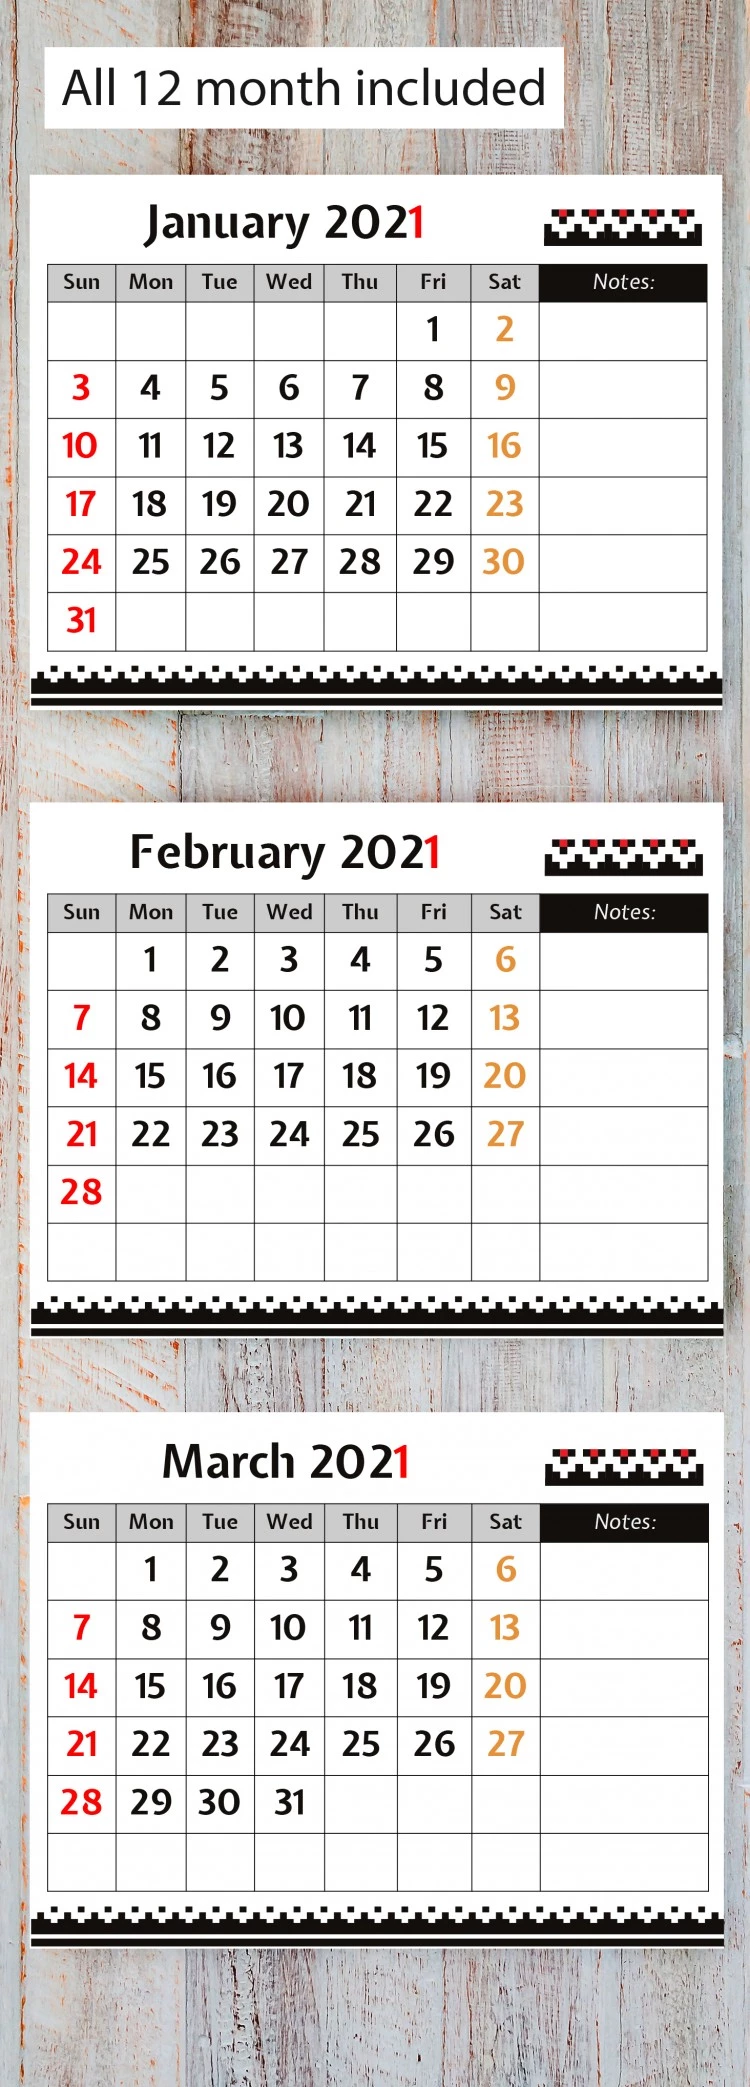 Calendrier mensuel spécial 2021 - free Google Docs Template - 10061806